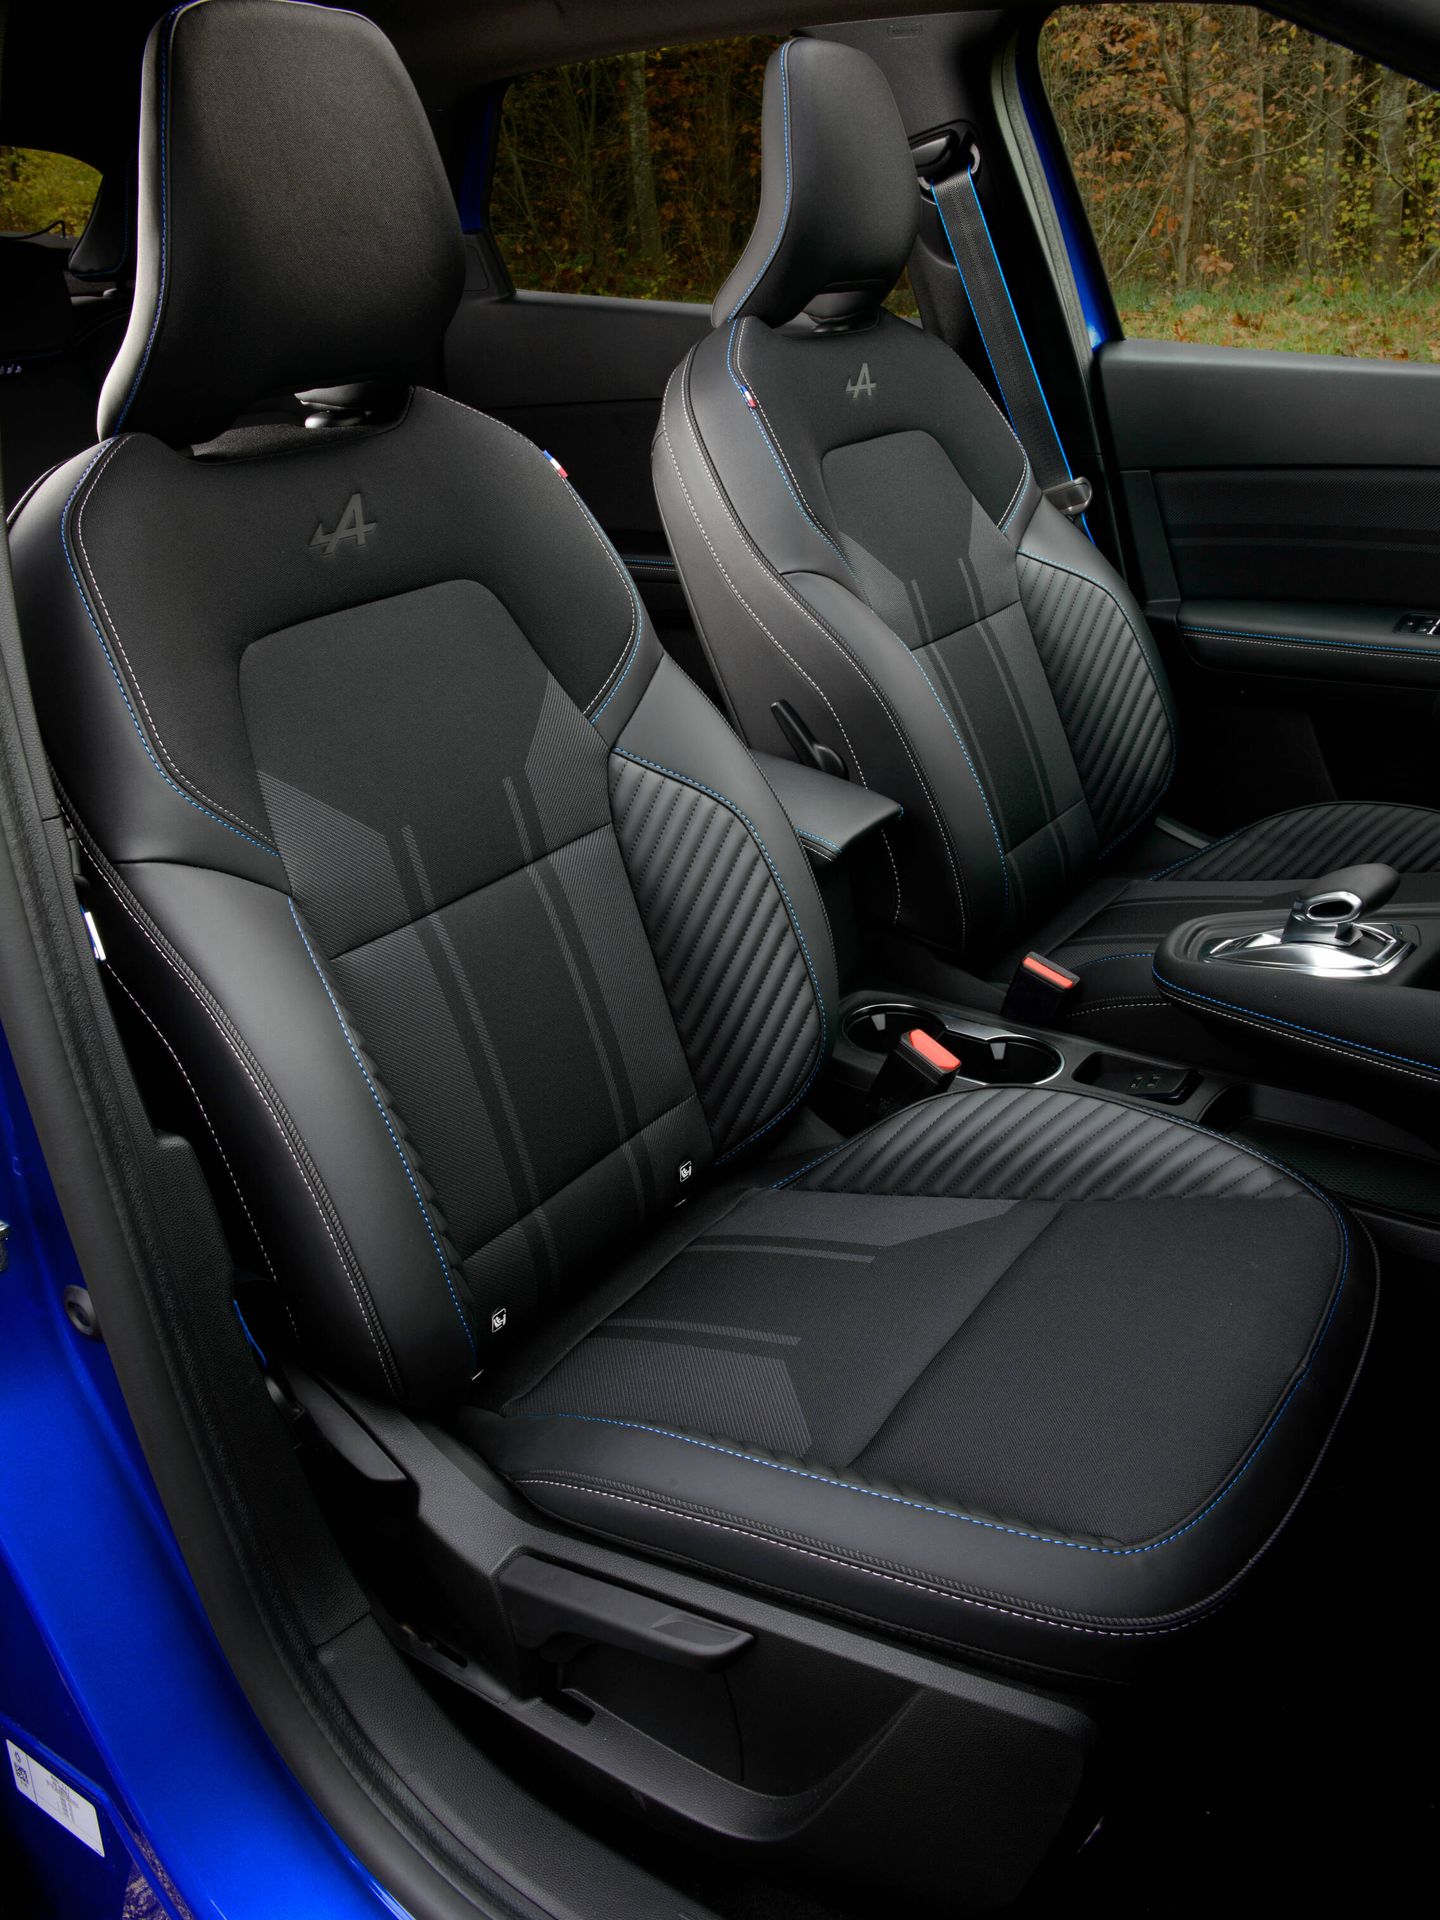 El acabado Esprit Alpine recurre a materiales más refinados, y su diseño tiene un toque deportivo.